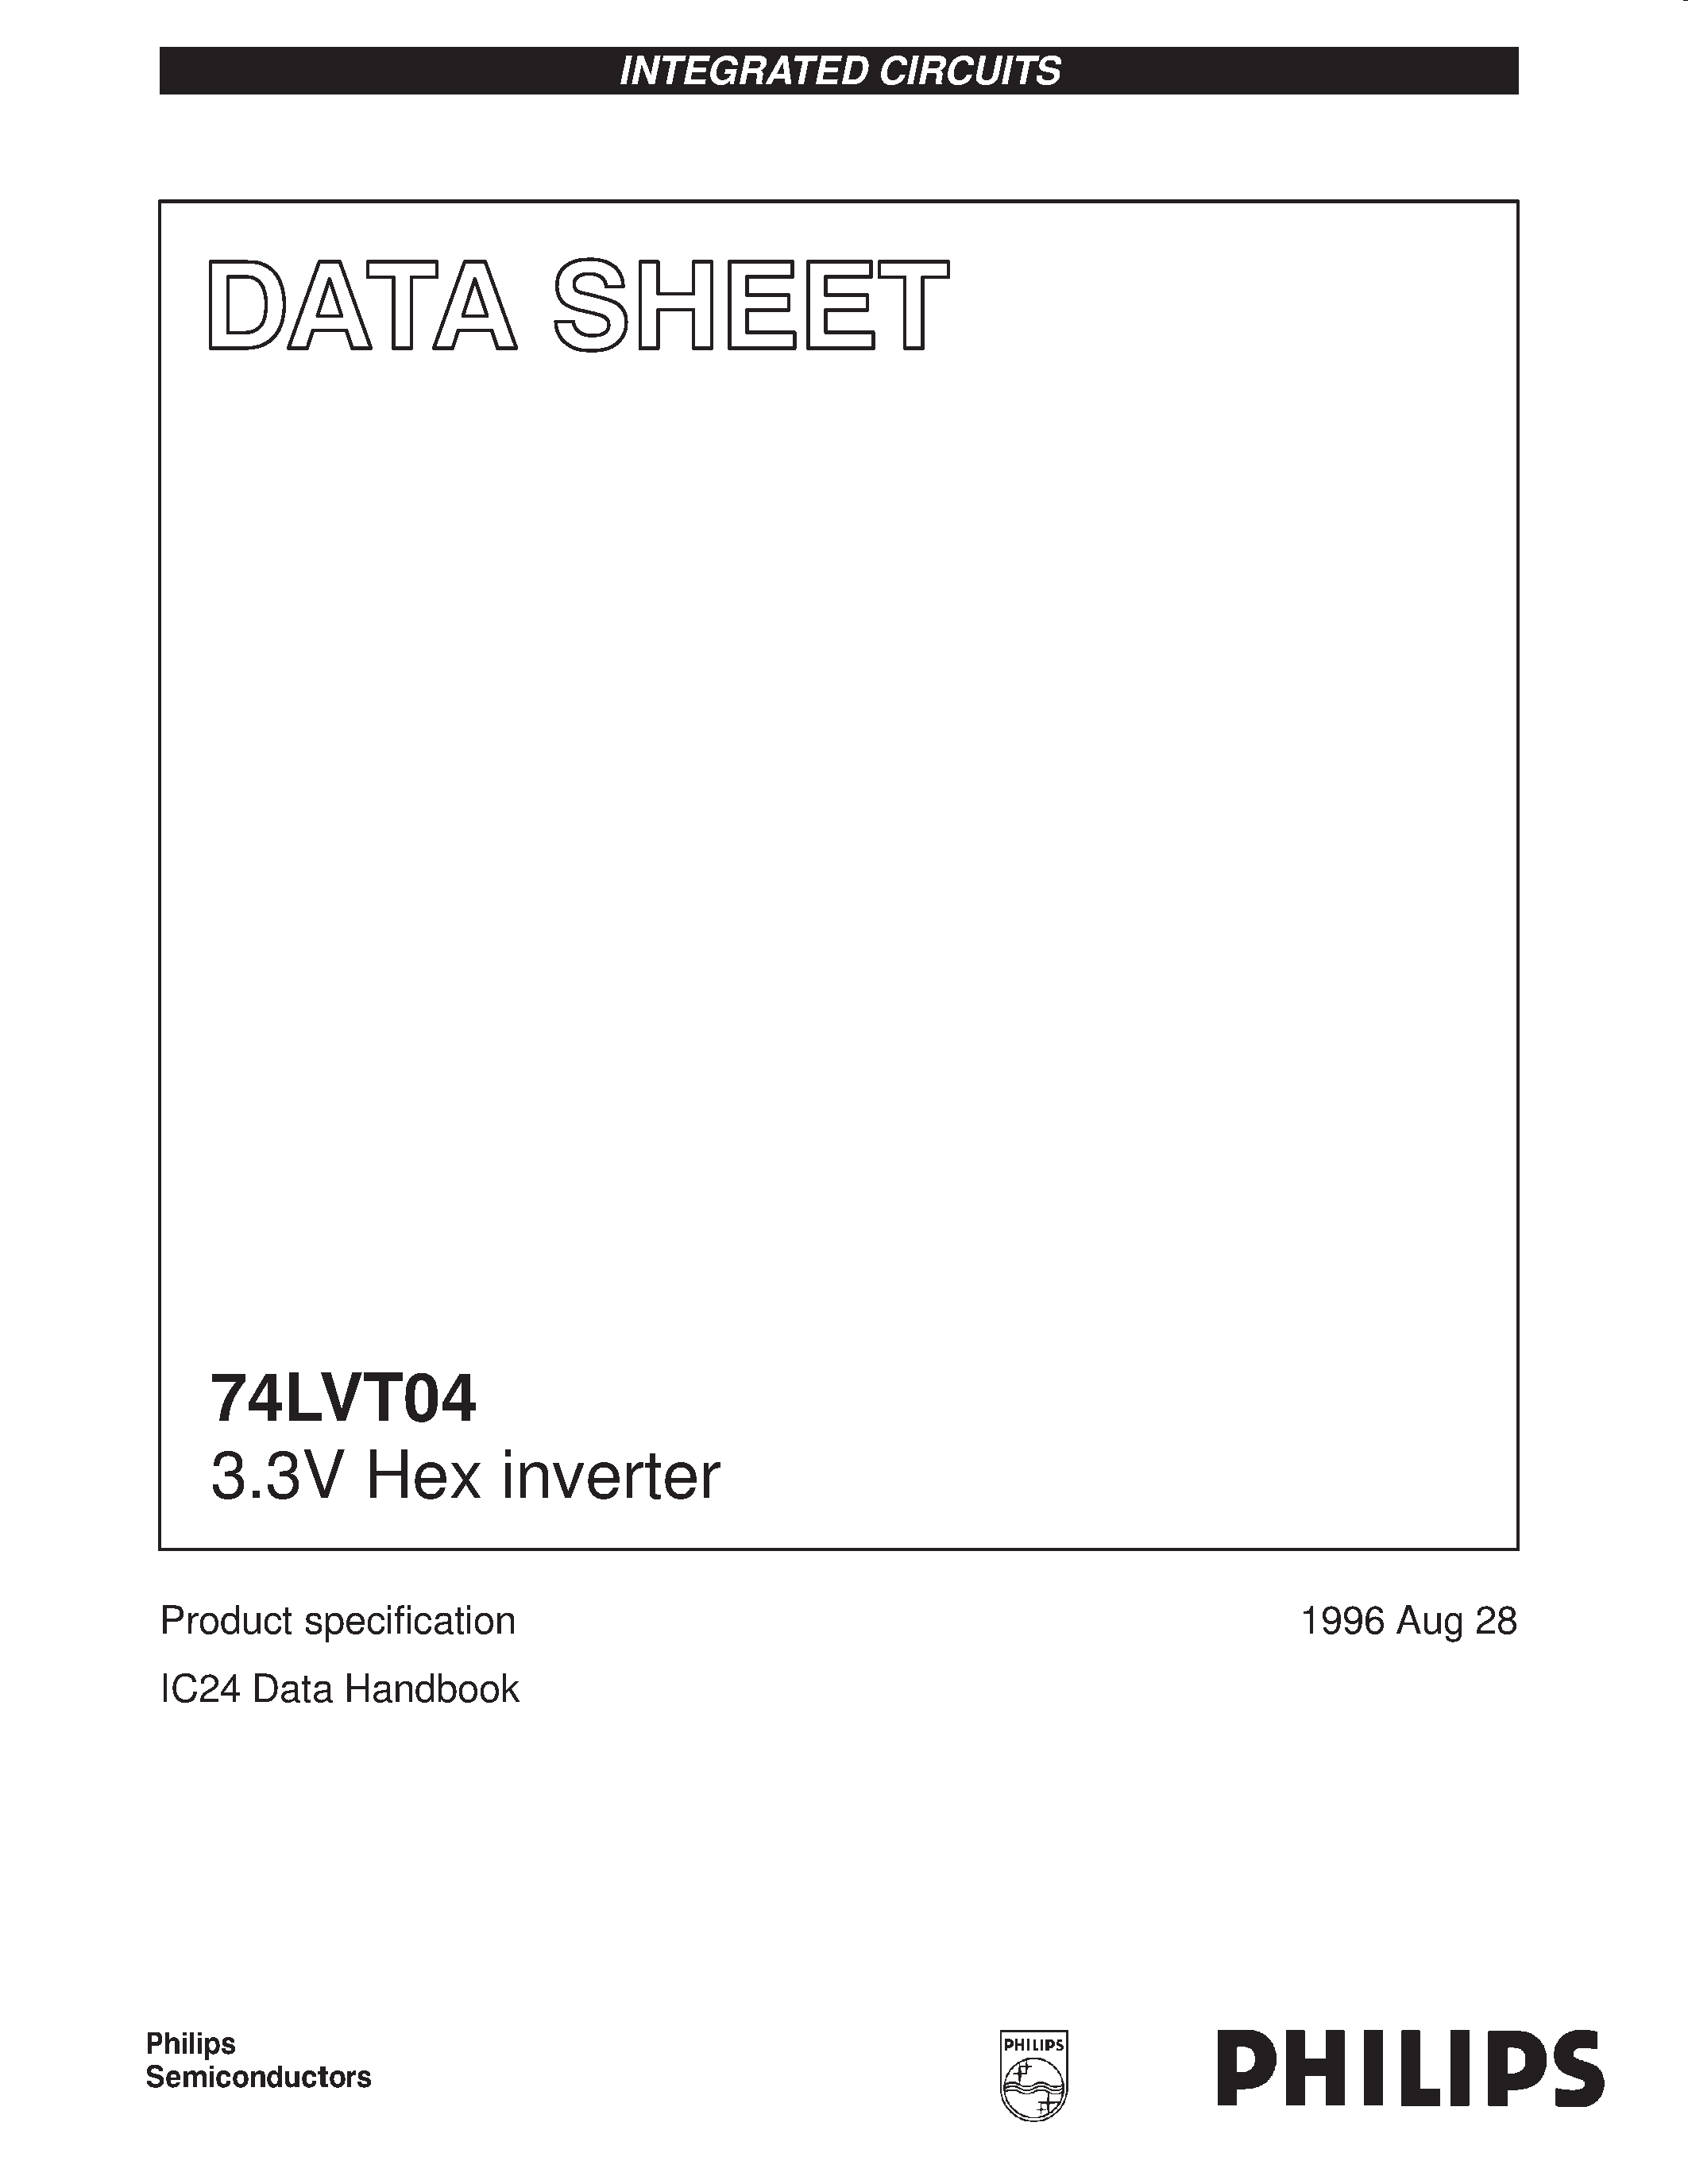 Даташит 74LVT04 - 3.3V Hex inverter страница 1